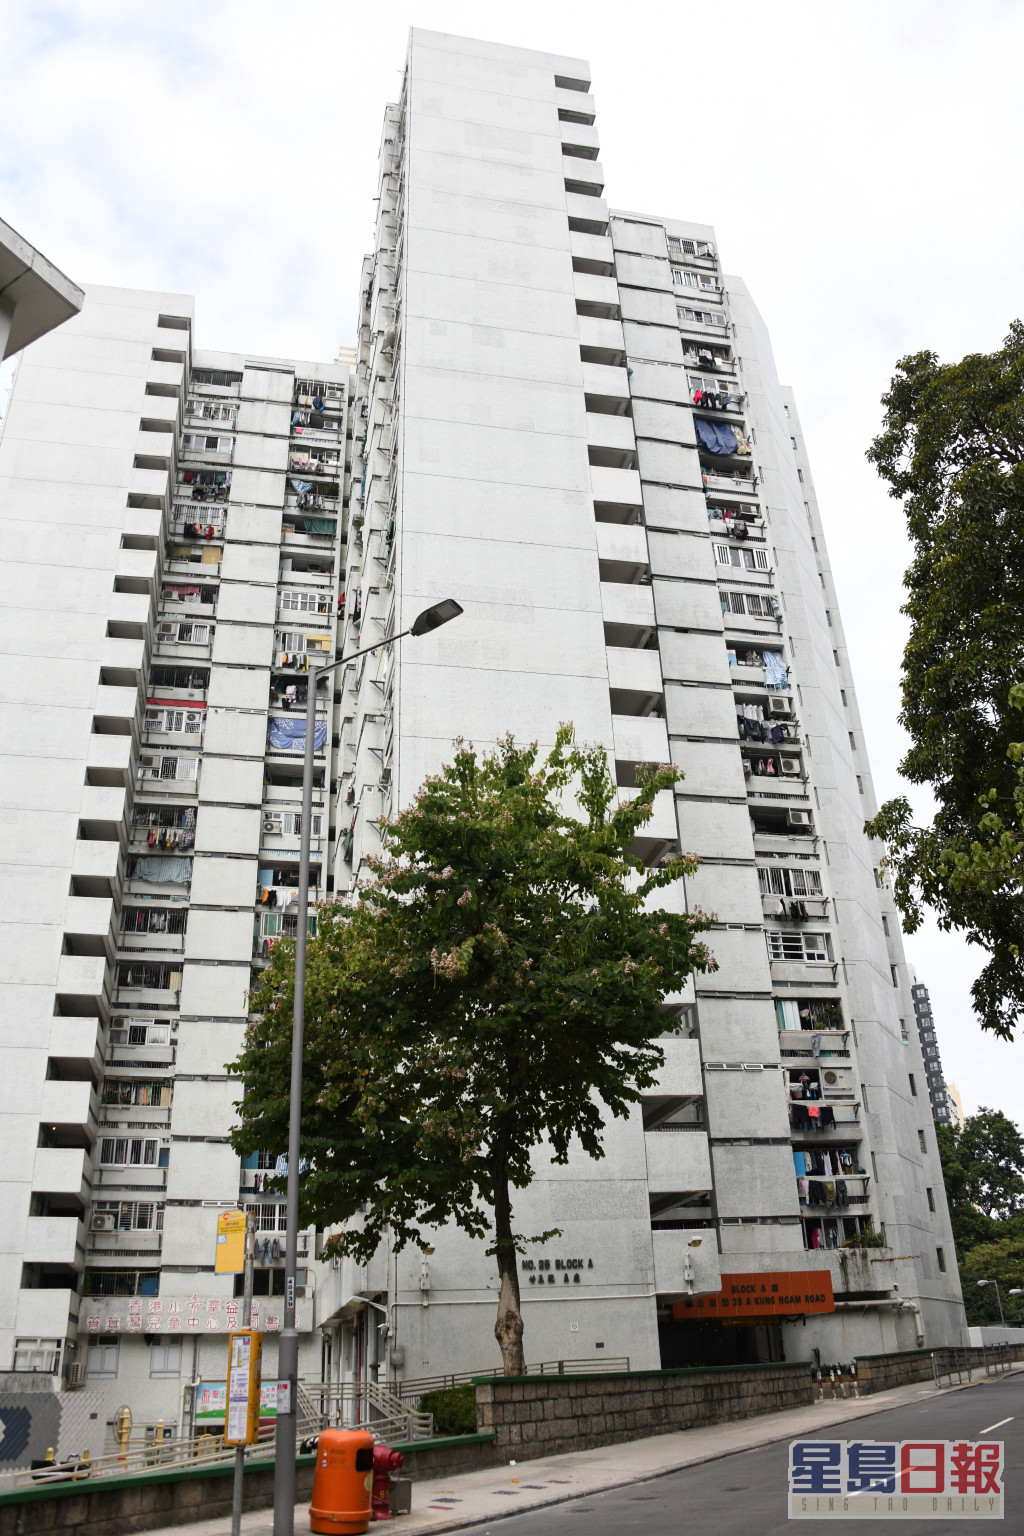 林家辉举出筲箕湾明华大厦原址重建为例。资料图片